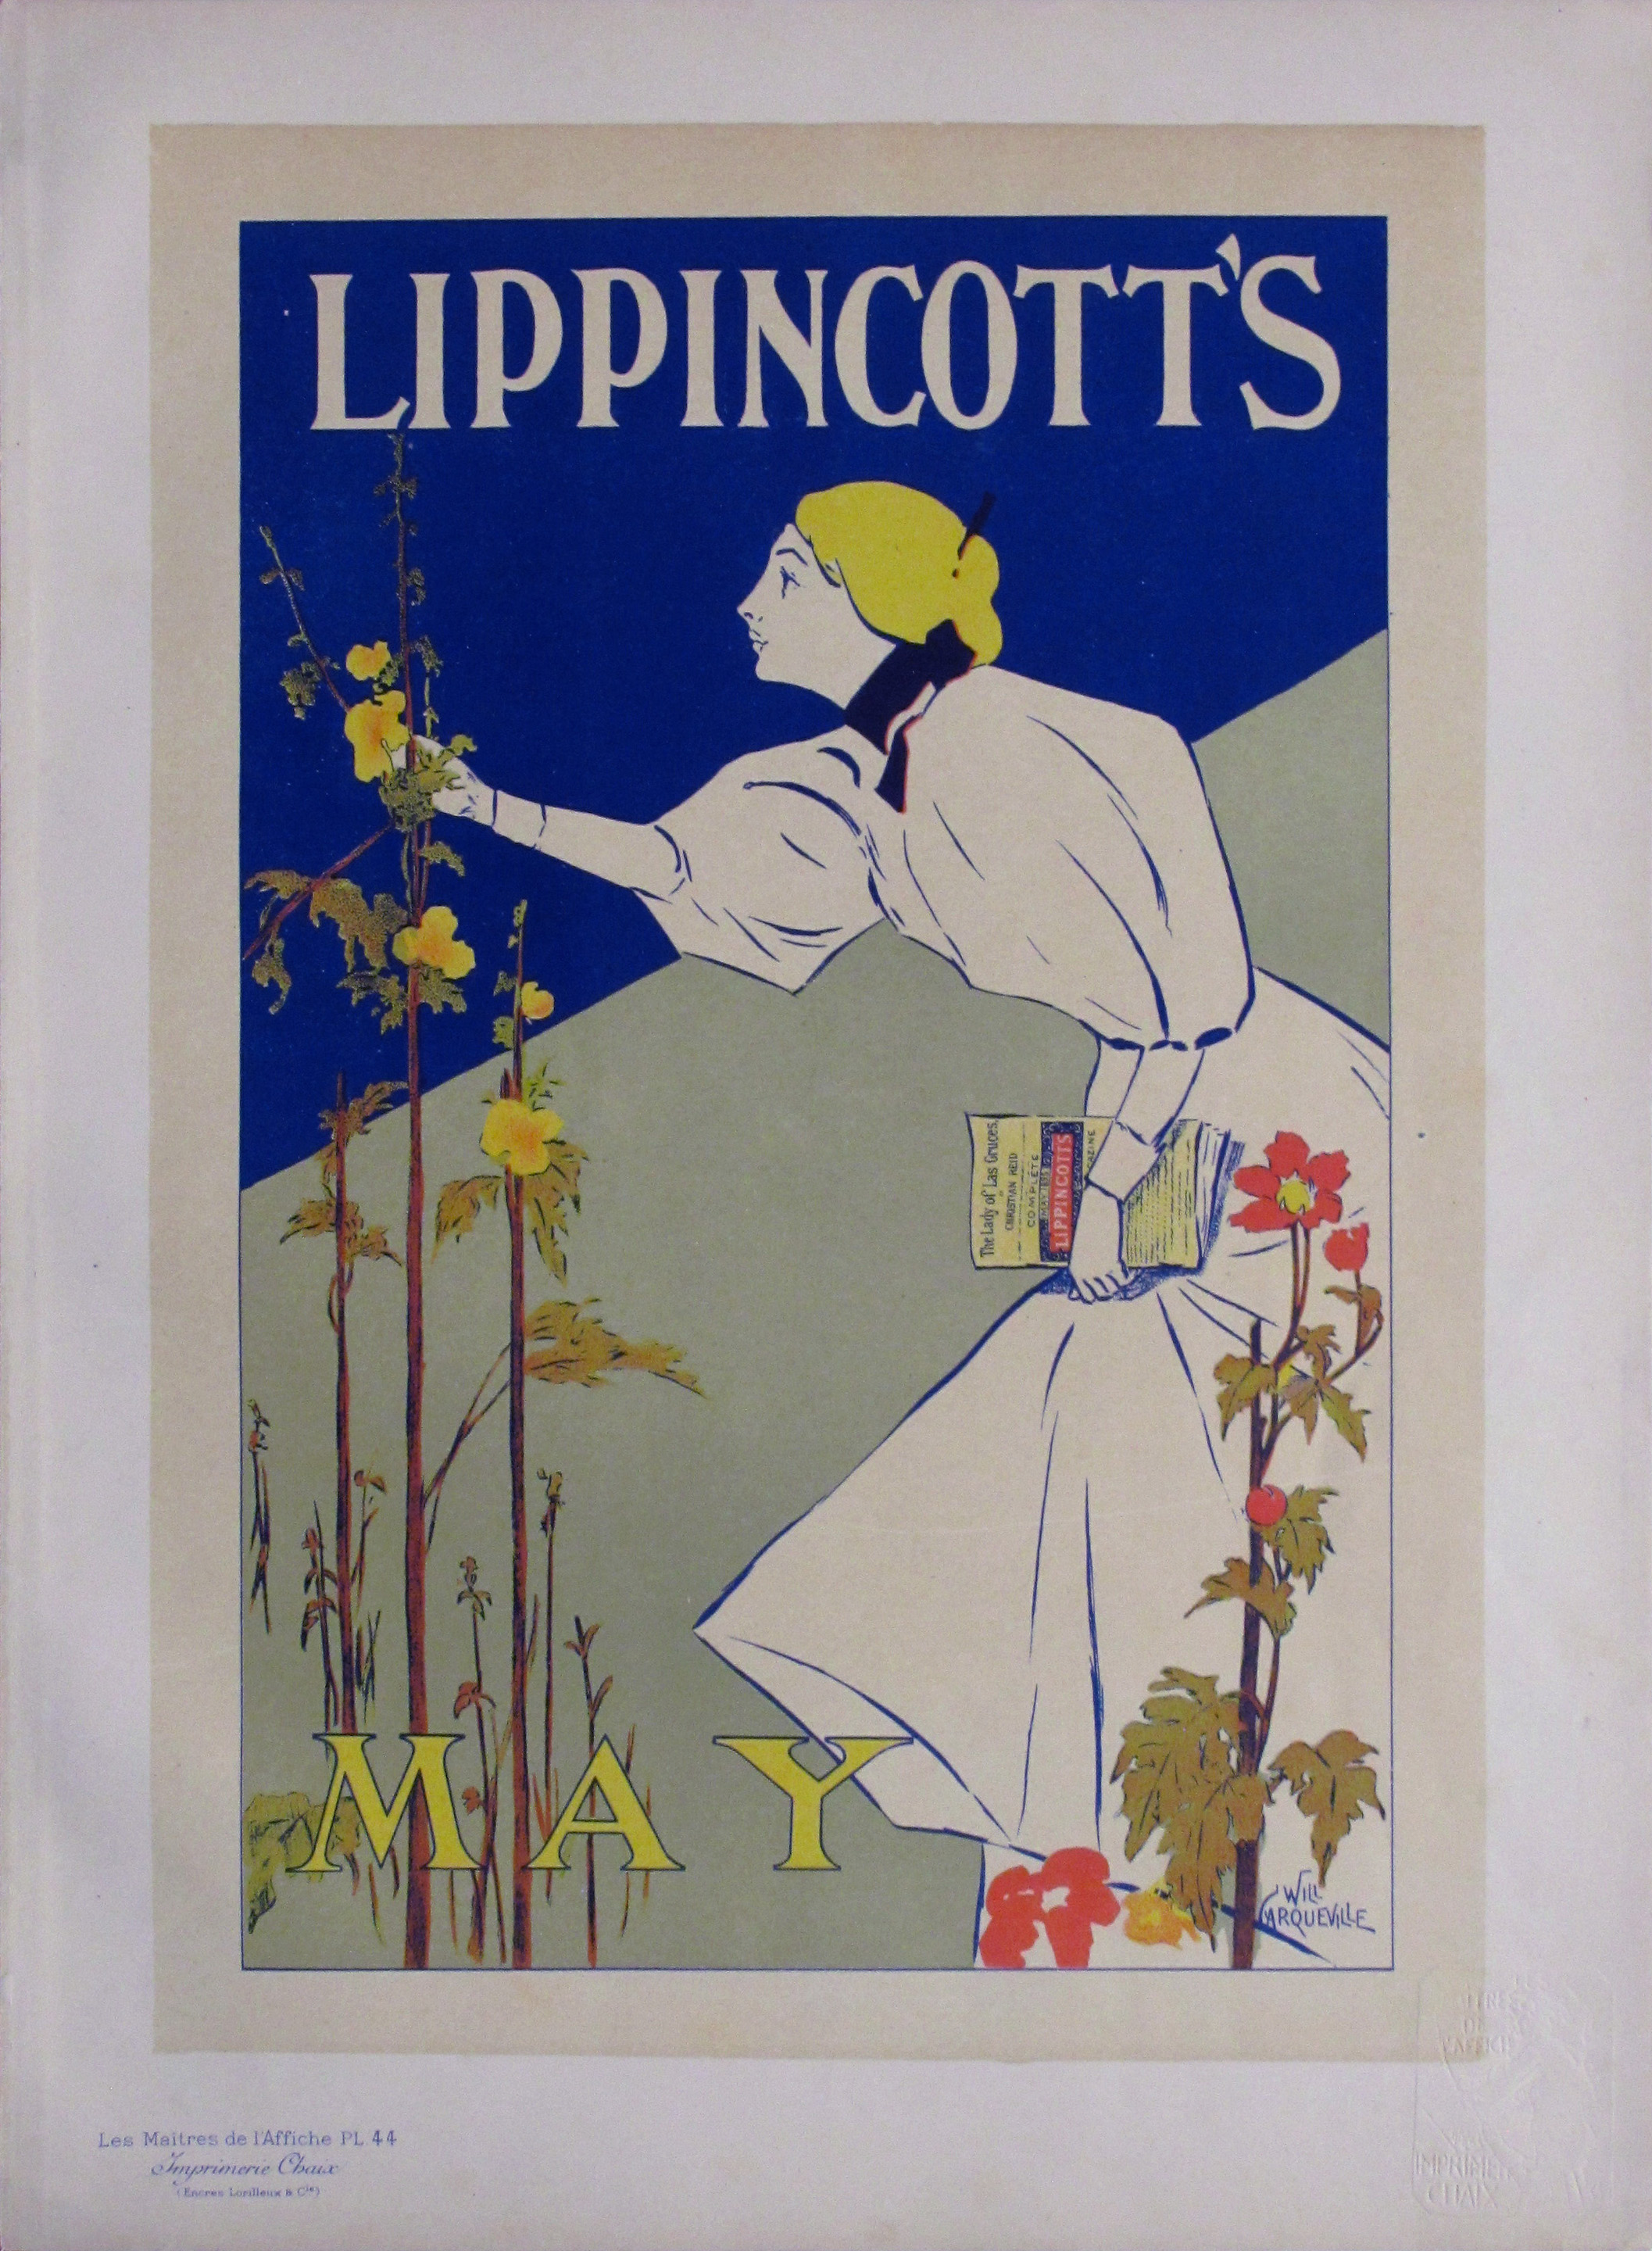 Les Maitres de l'Affiche:  "Lippincott's May"